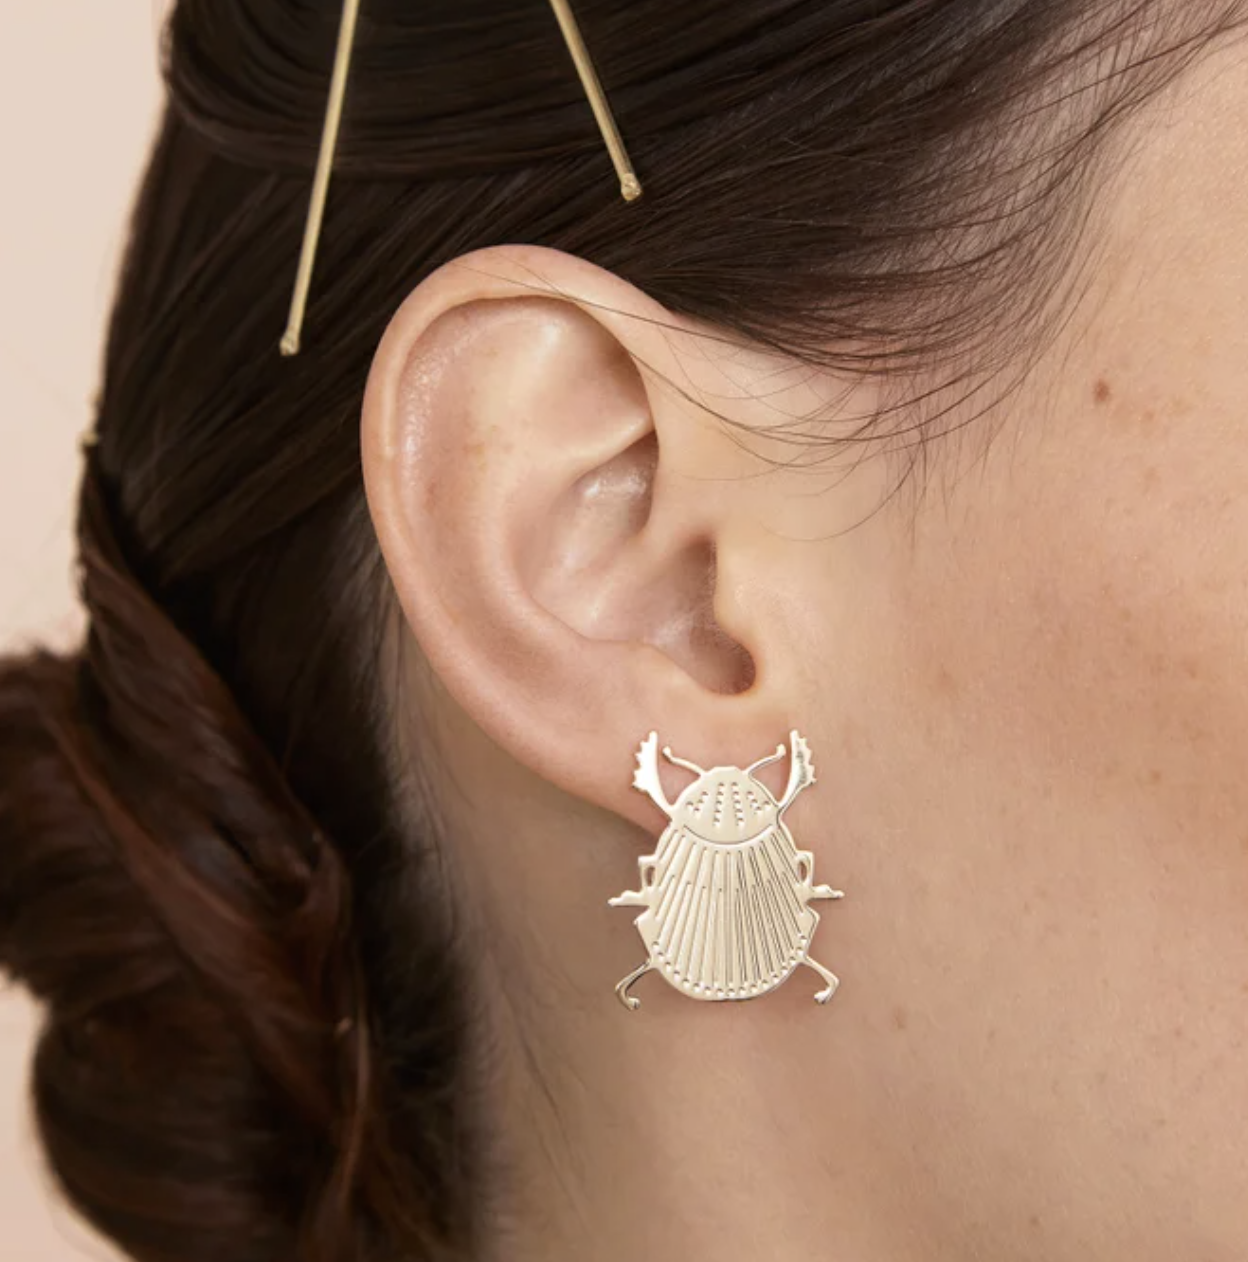   Scarab earrings  - Christelle DIT Christensen 